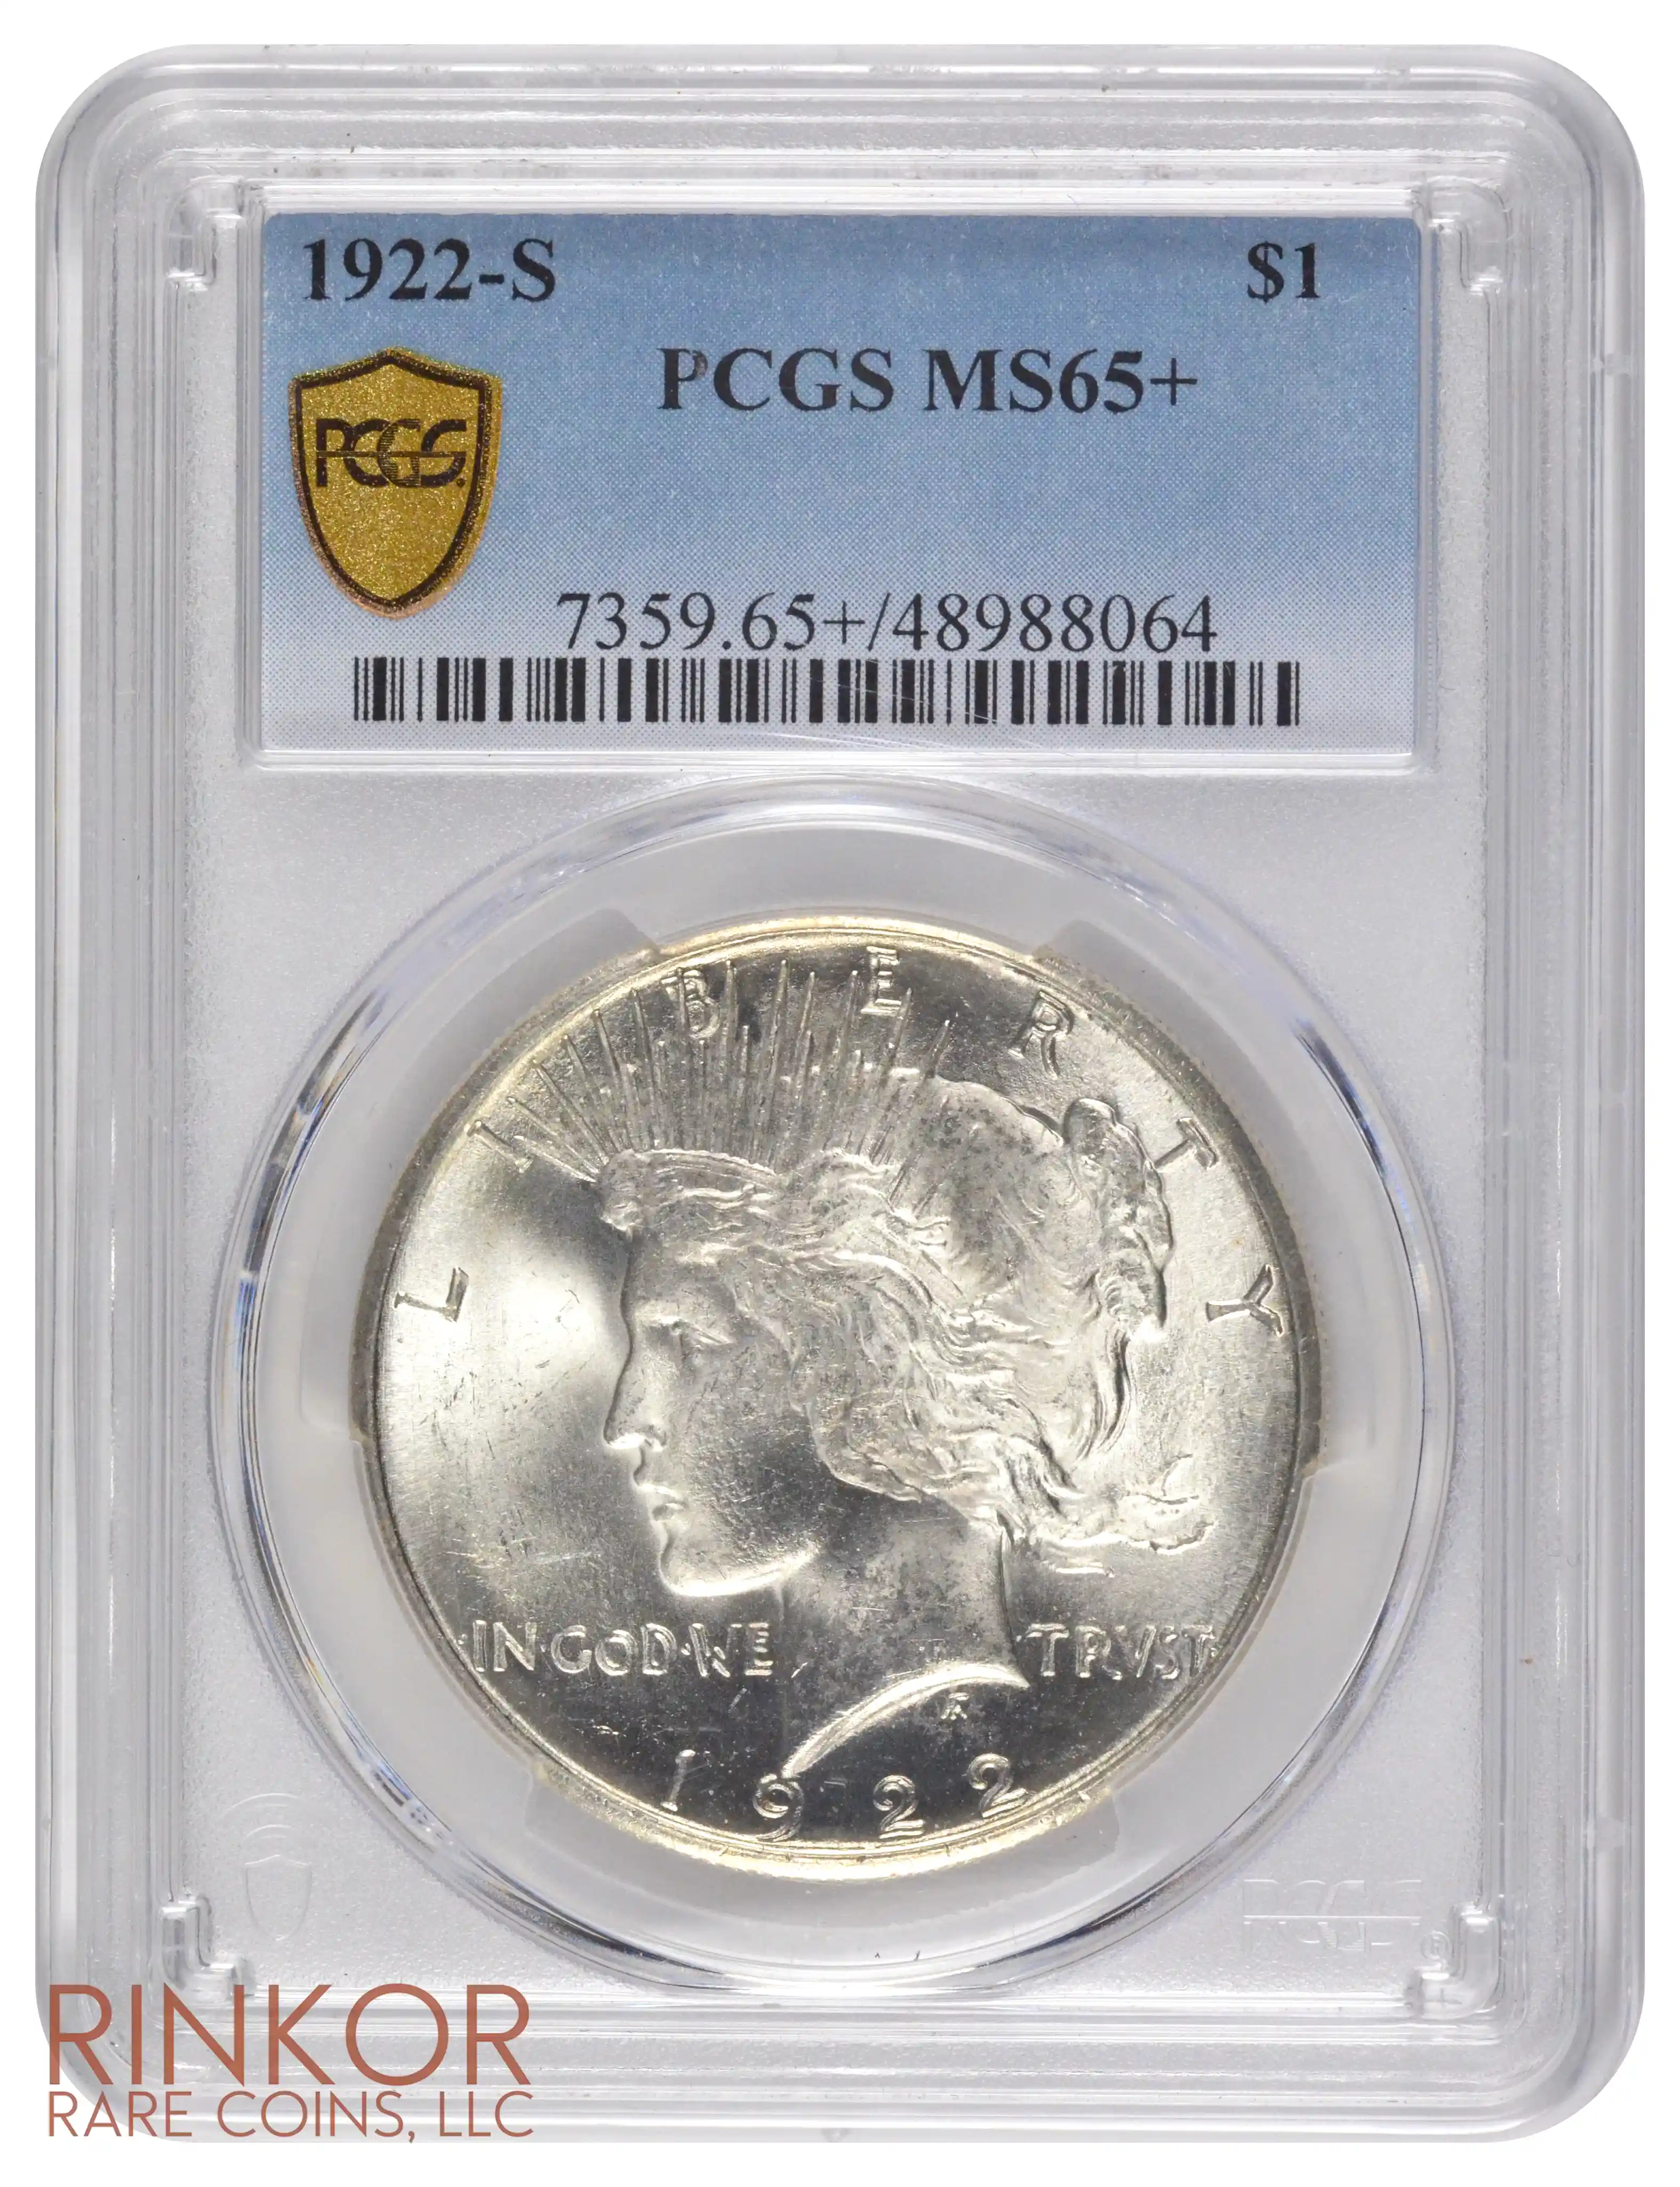 1922-S $1 PCGS MS 65+